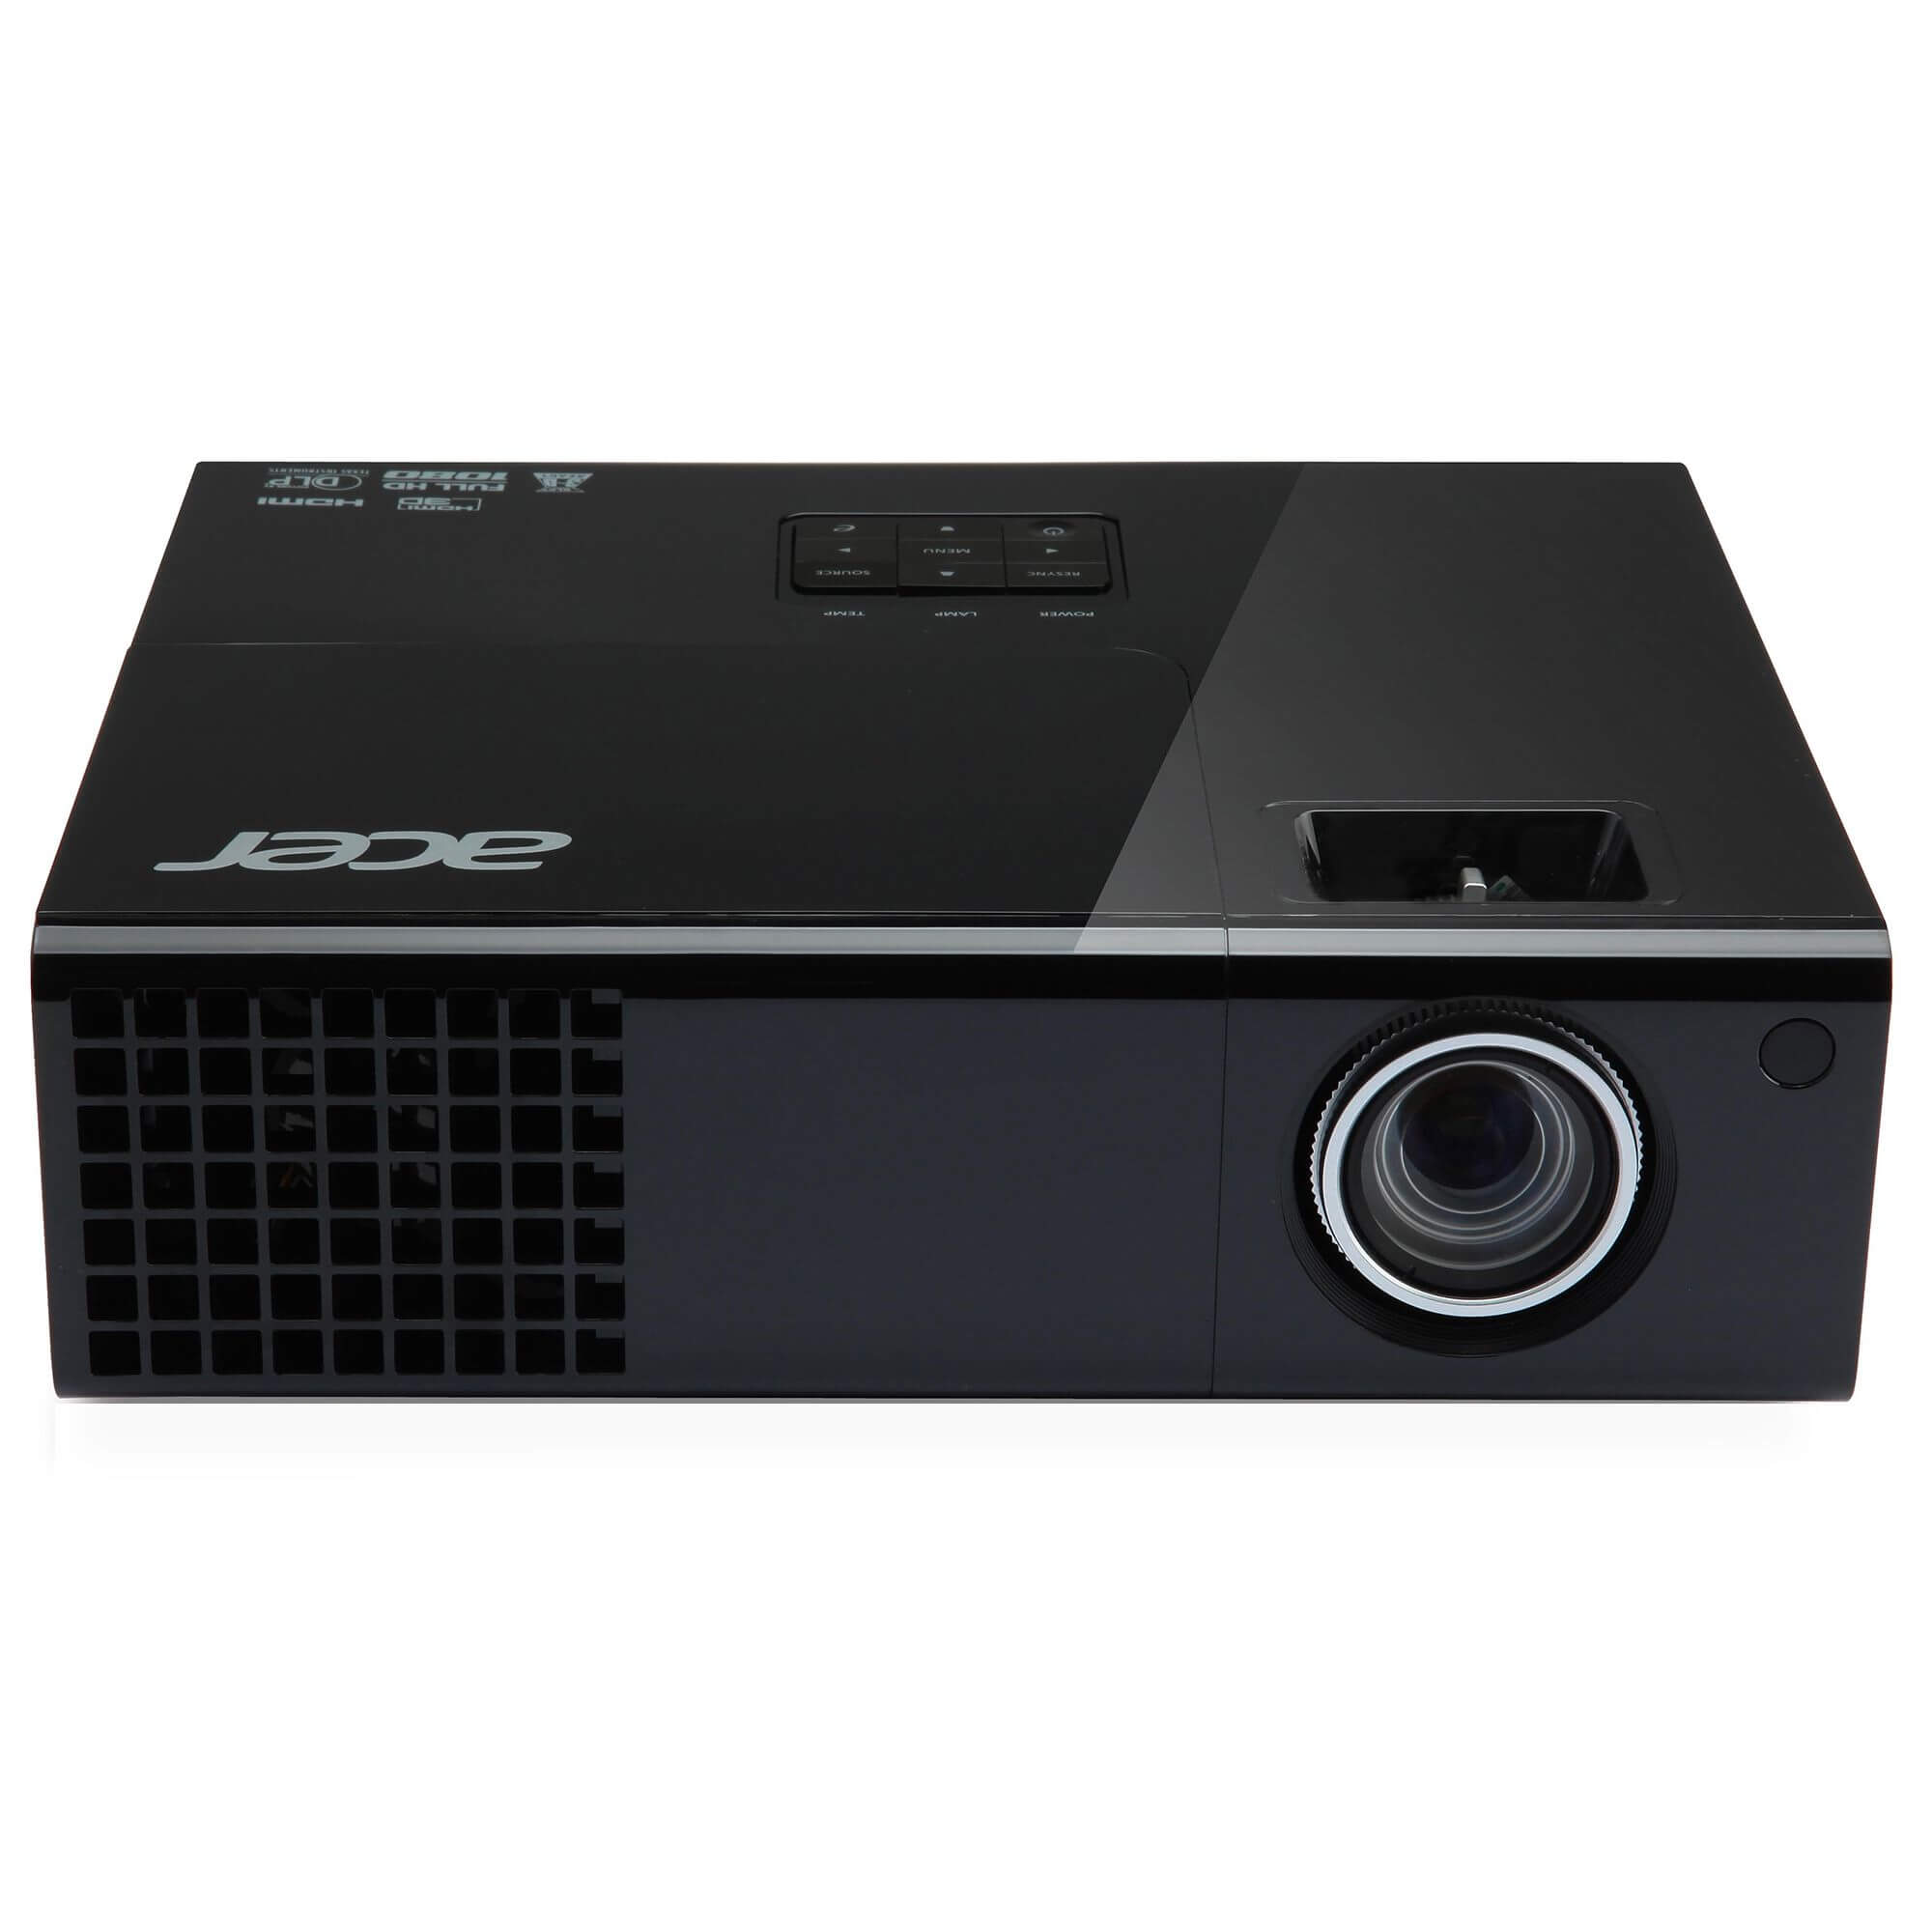  Videoproiector Acer P1500, 3D, Full HD, Negru 